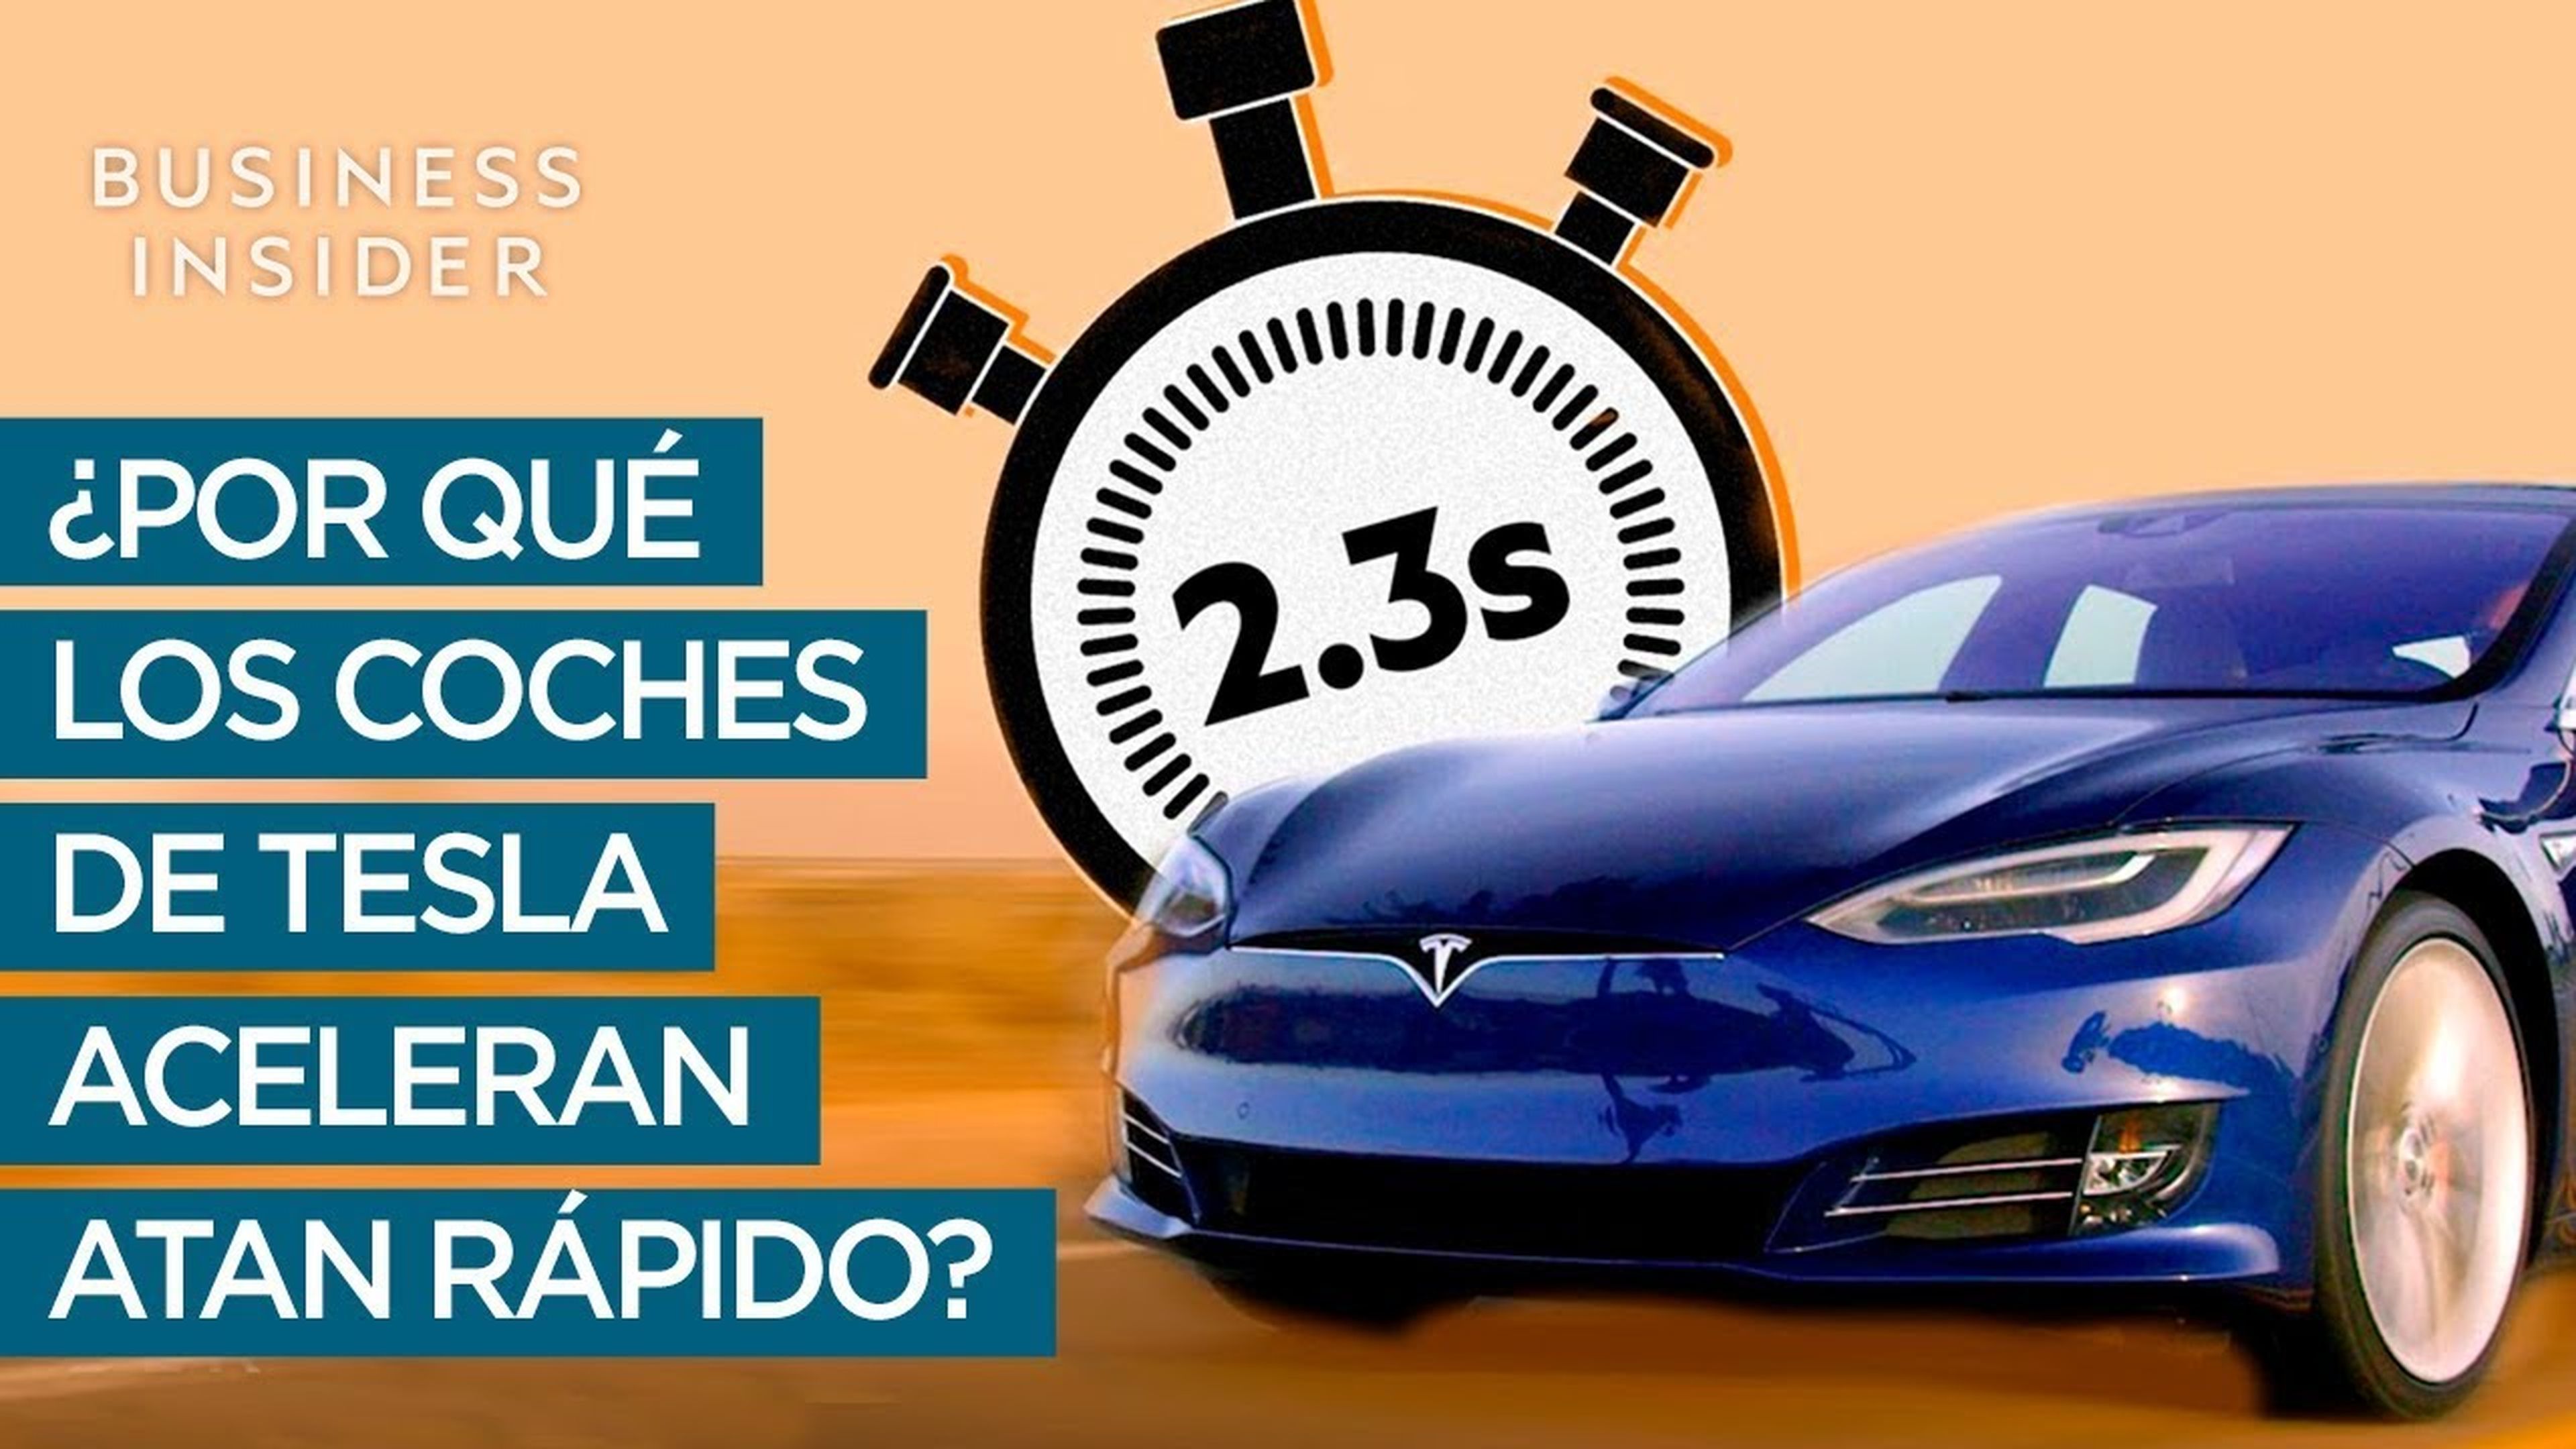 ¿Cómo ha conseguido Tesla esta aceleración en sus coches?